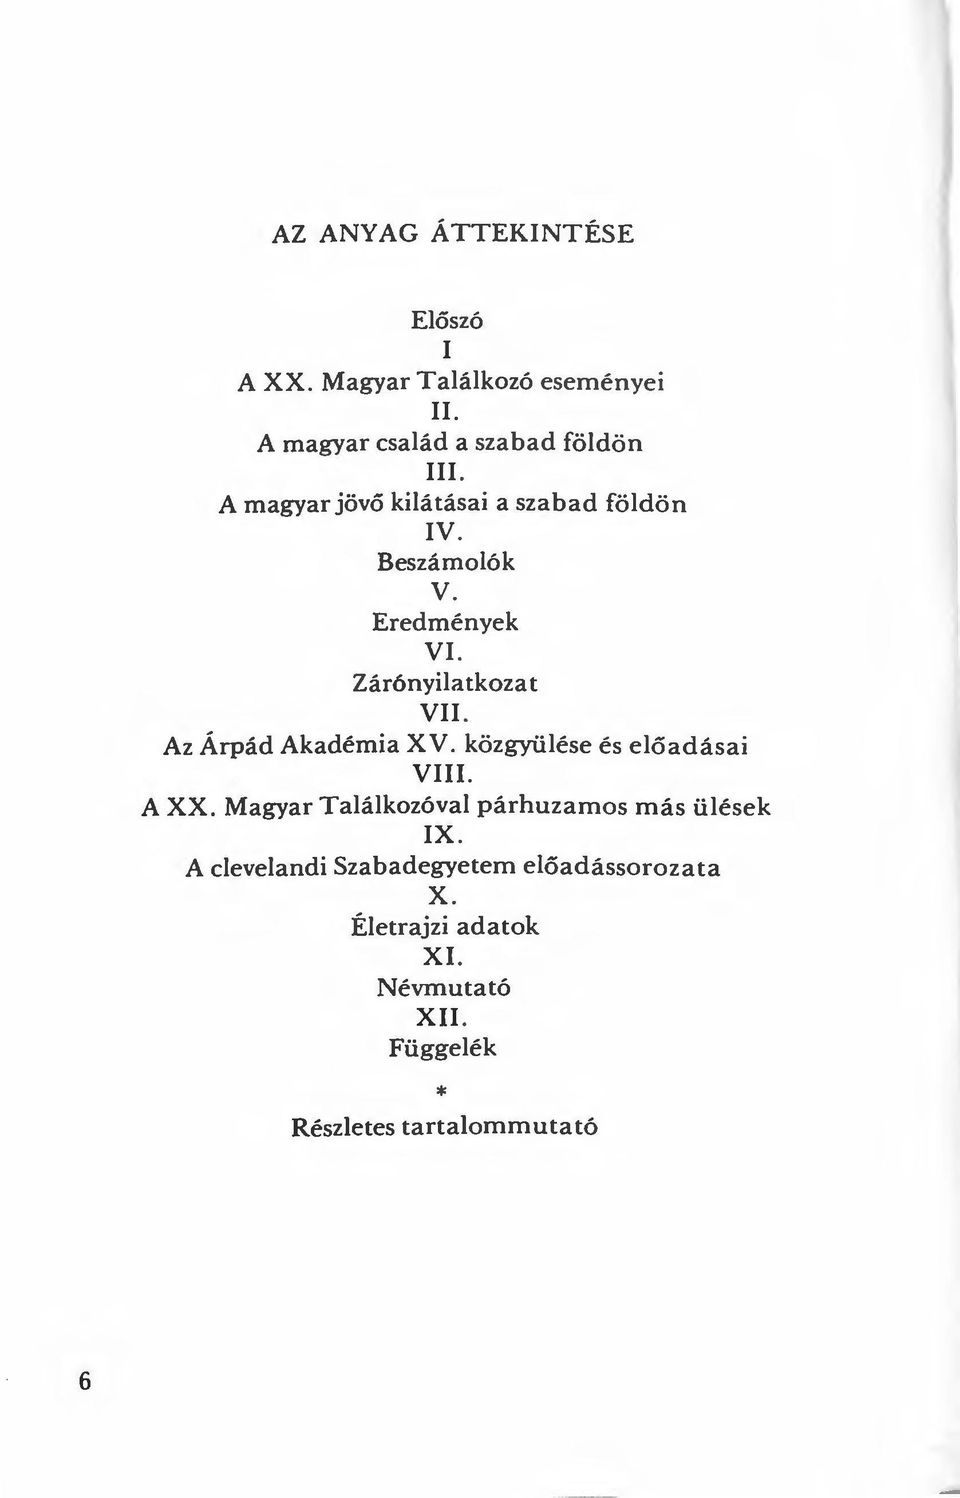 Az Árpád Akadémia X V. közgyülése és előadásai VIII. A XX. Magyar Találkozóval párhuzamos más ülések IX.